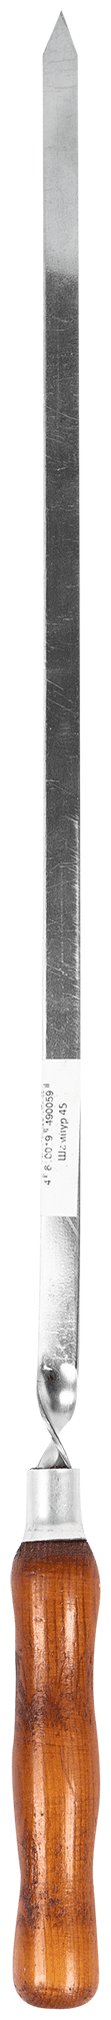 Шампур металлический 45 см с деревянной ручкой